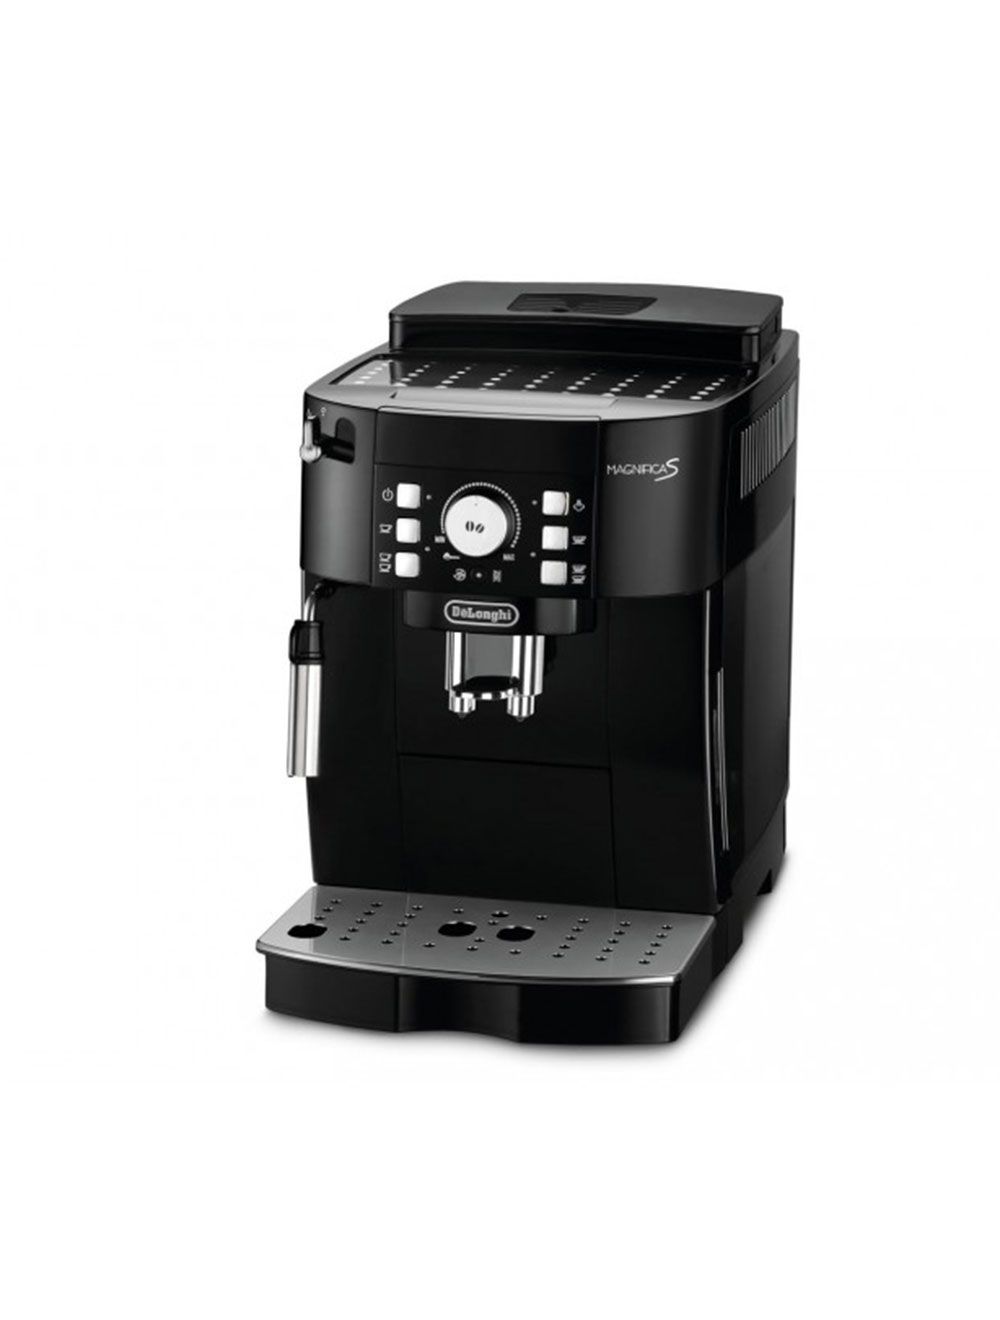 Combiné expresso cafetière Delonghi De'Longhi Magnifica S ECAM 21.110.B  - Machine à café automatique avec buse vapeur "Cappuccino" - 15  bar - Noir avec des touches d'argent